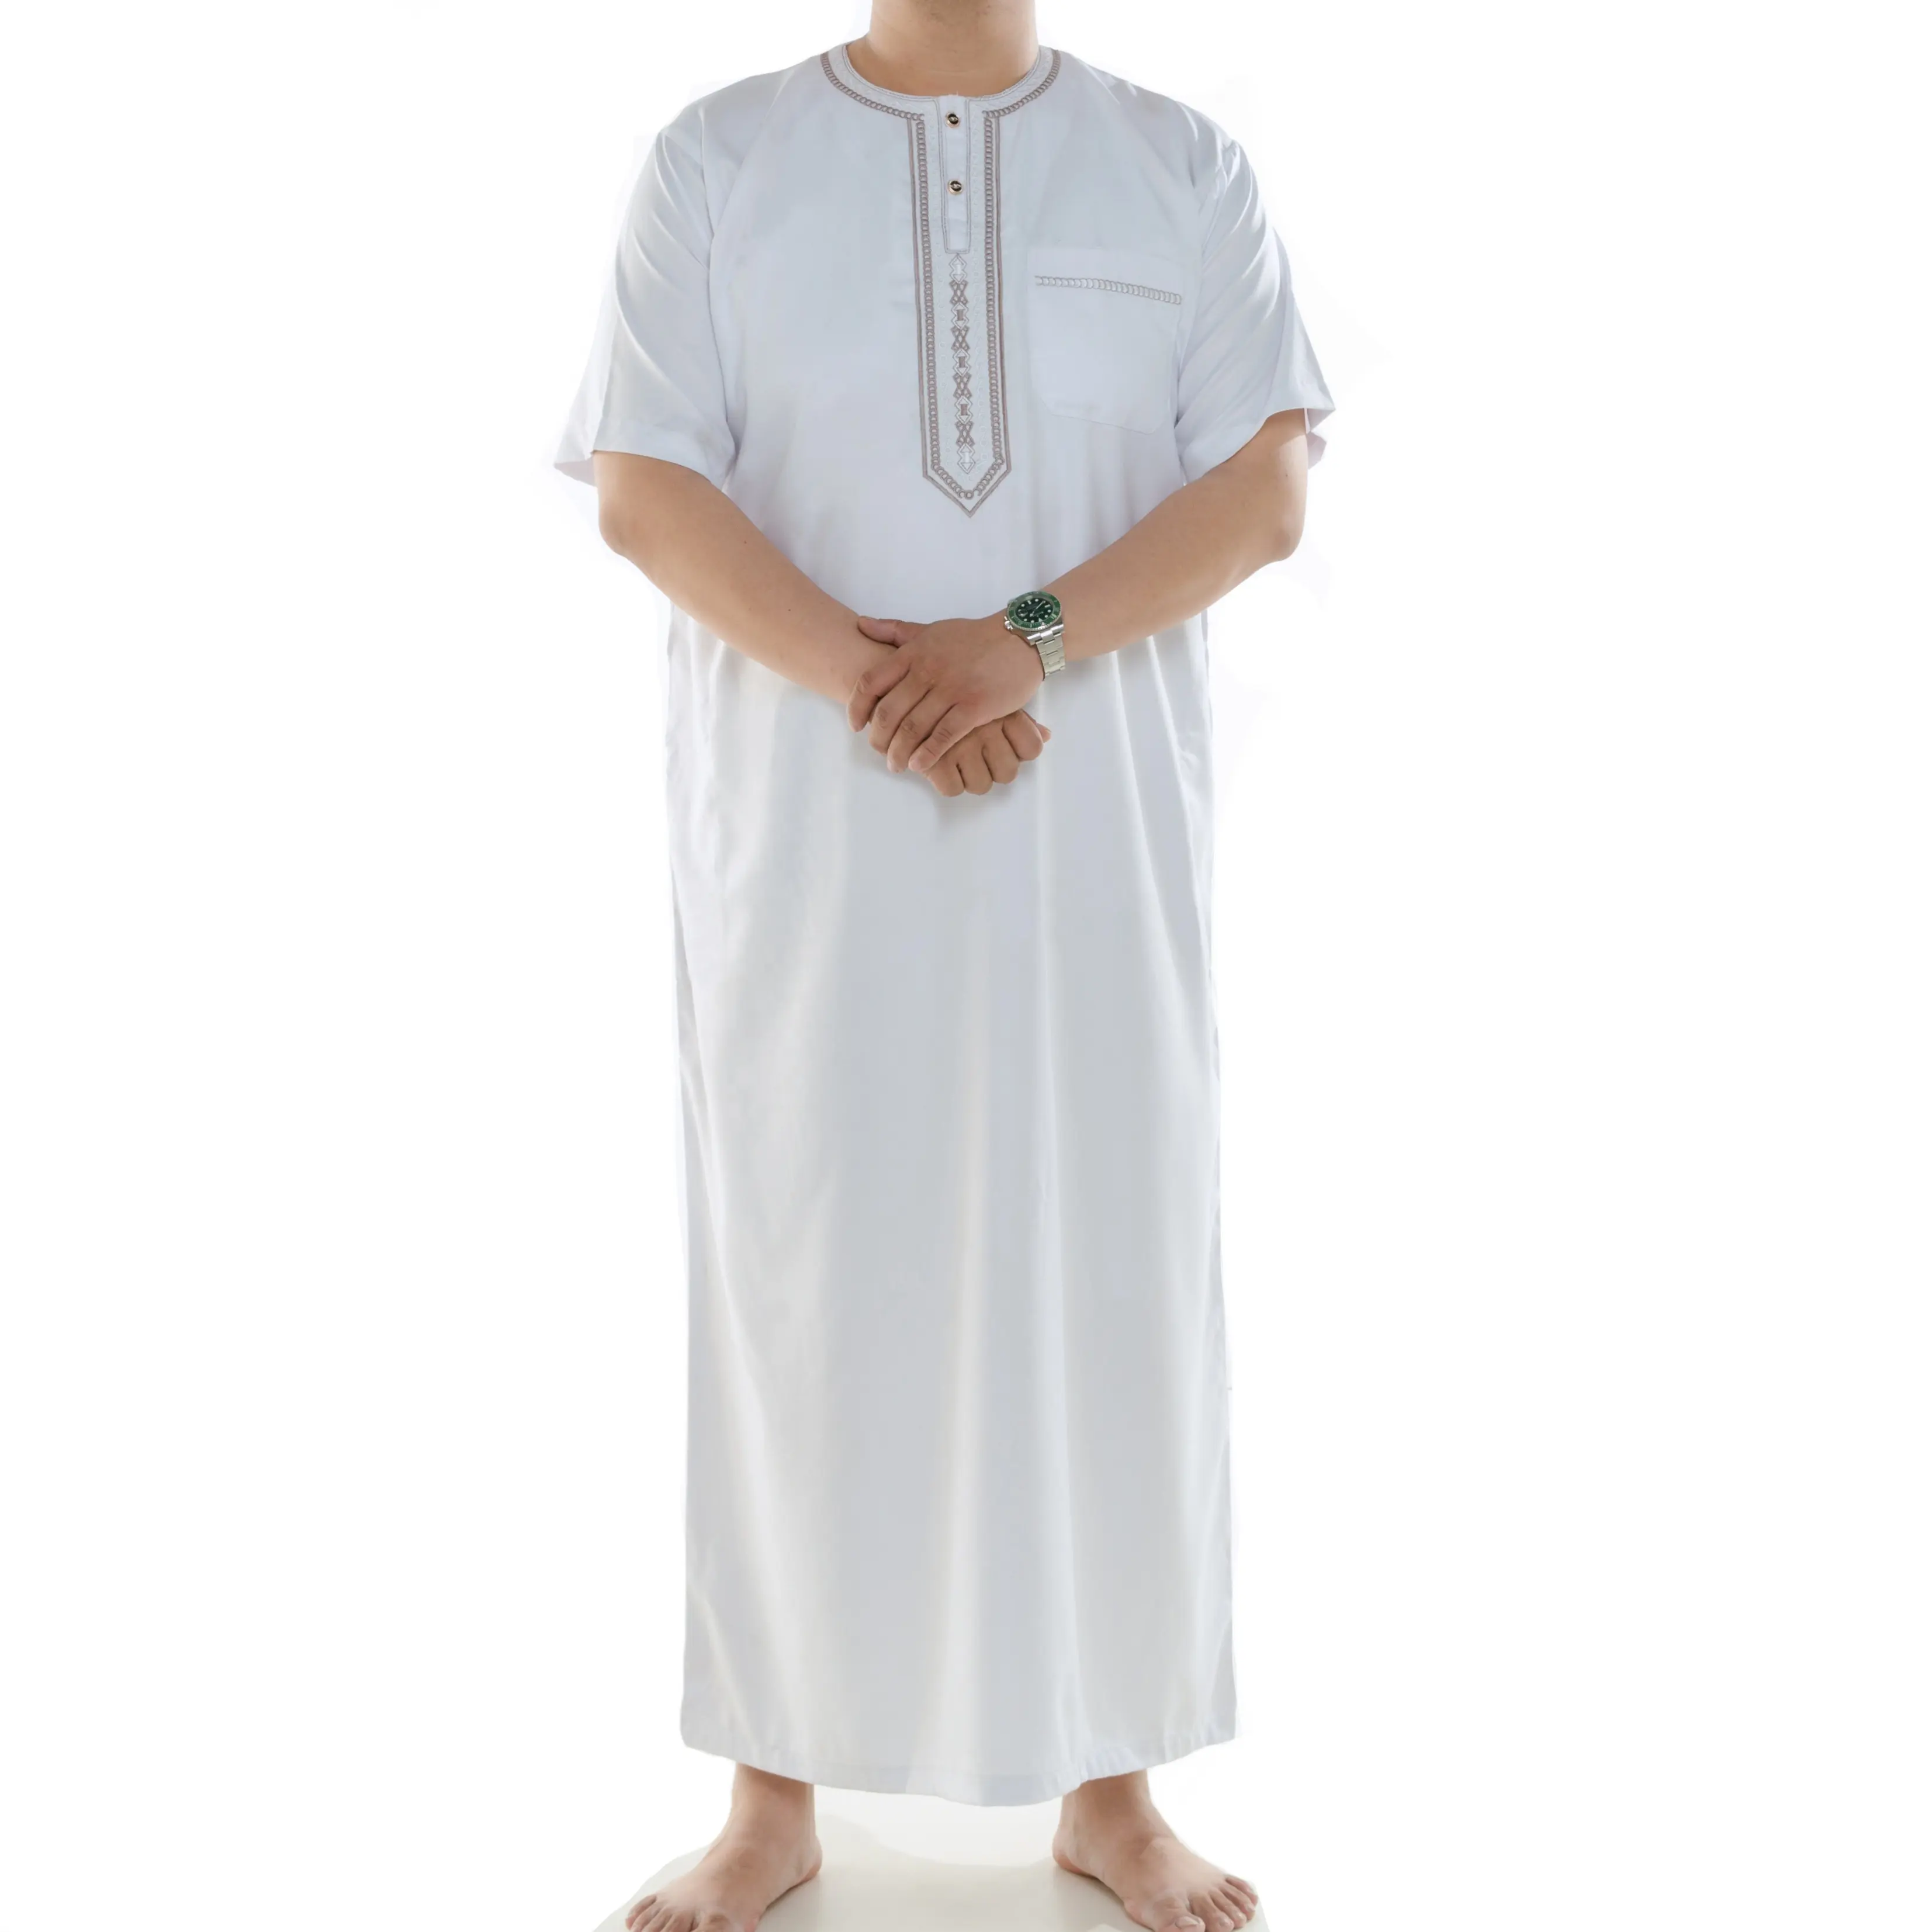 イスラムの男性はトベ/イスラム教徒の長いクルタ/卸売ジュバ/解凍を着用します